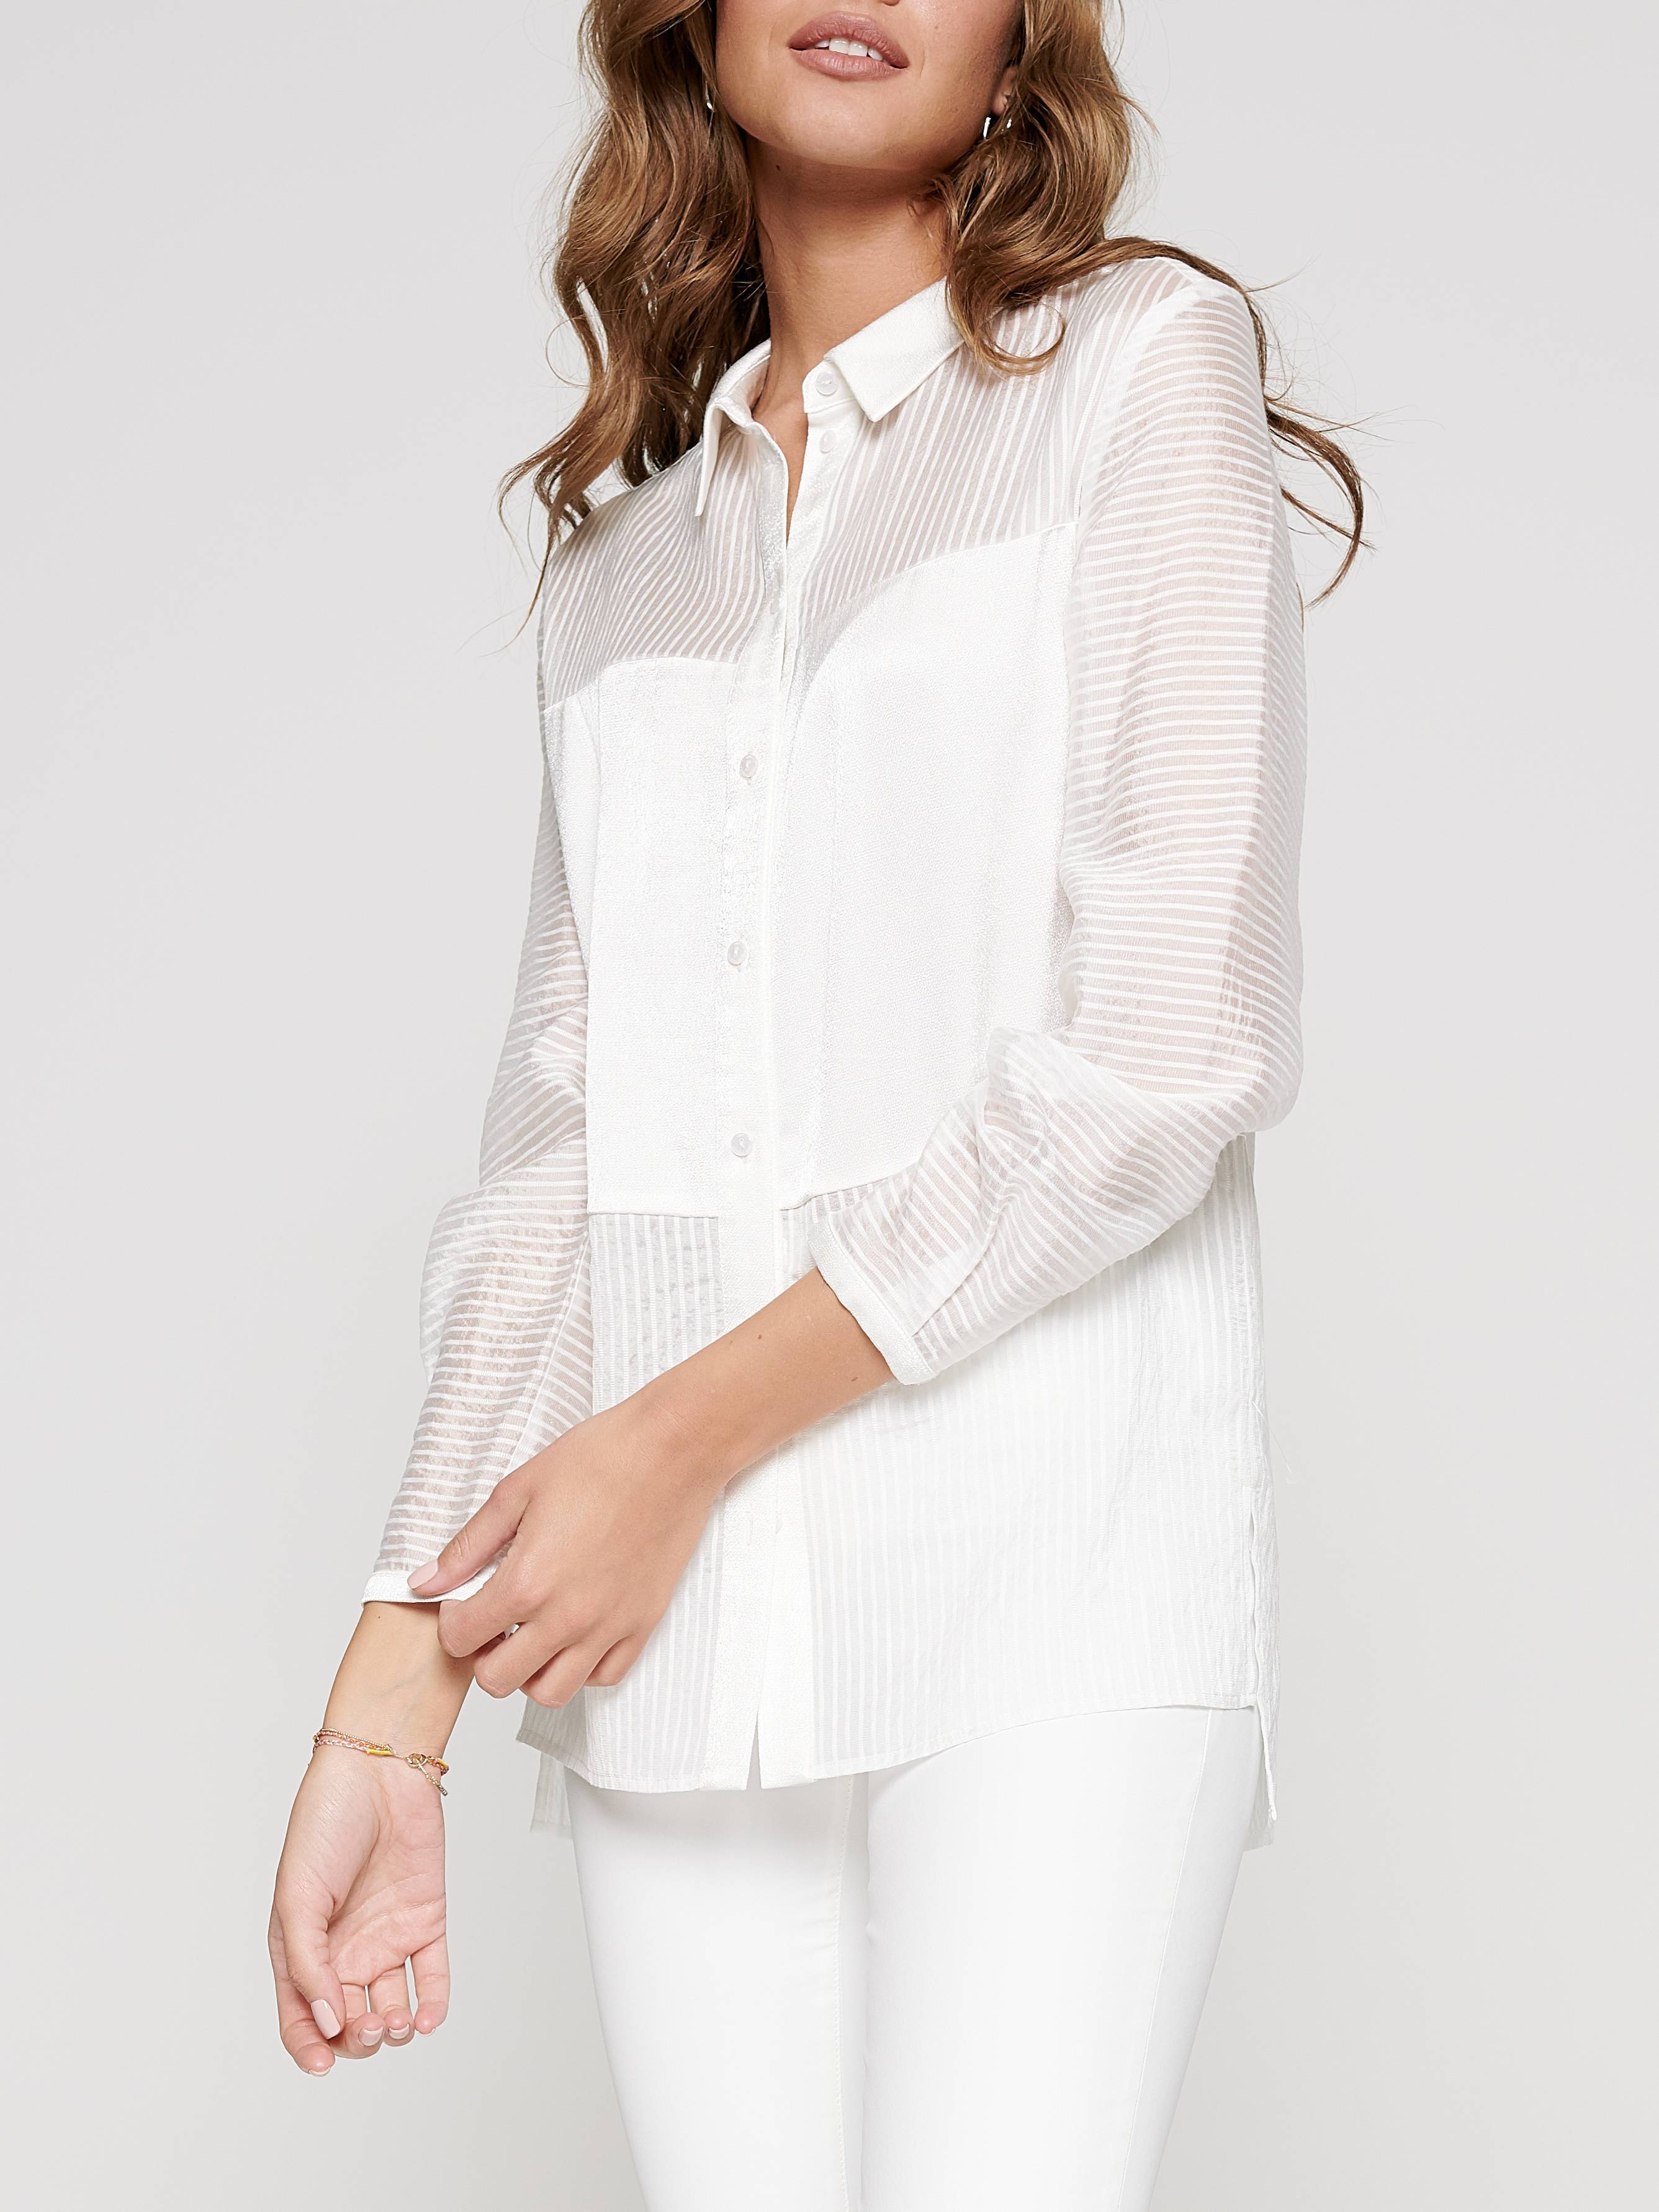 Рубашка в полоску из вискозы премиального качества «ощущение шелка» LBL 1095 Conte ⭐️, цвет off-white, размер 170-100-106